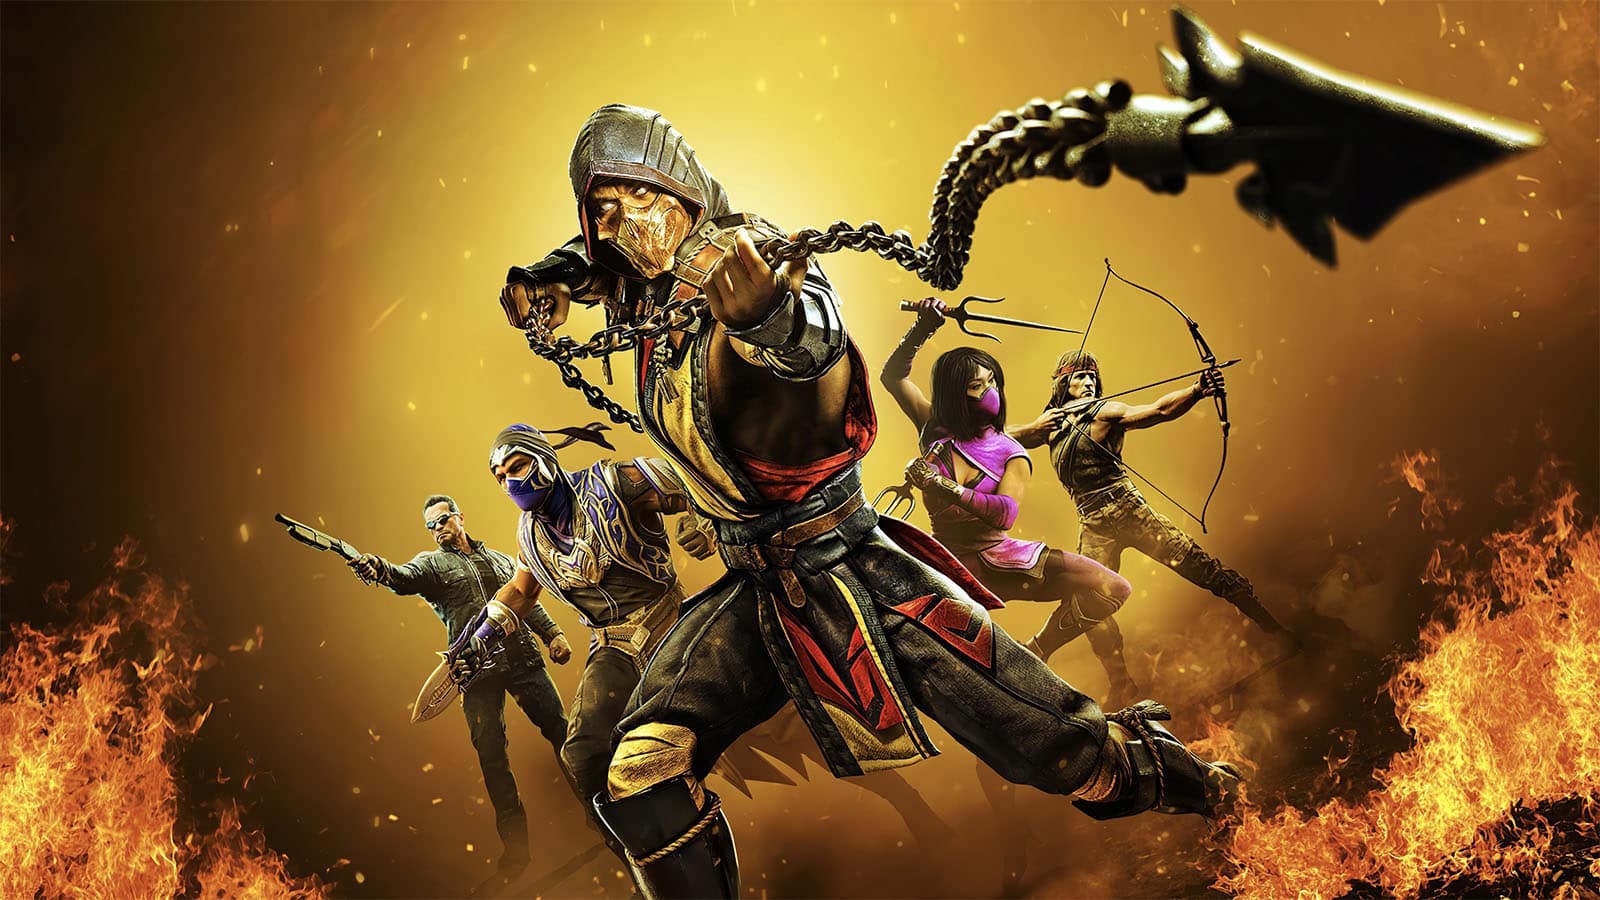 D'Vorah Mortal Kombat 11 Fatalities Guide - Inputs List & Videos